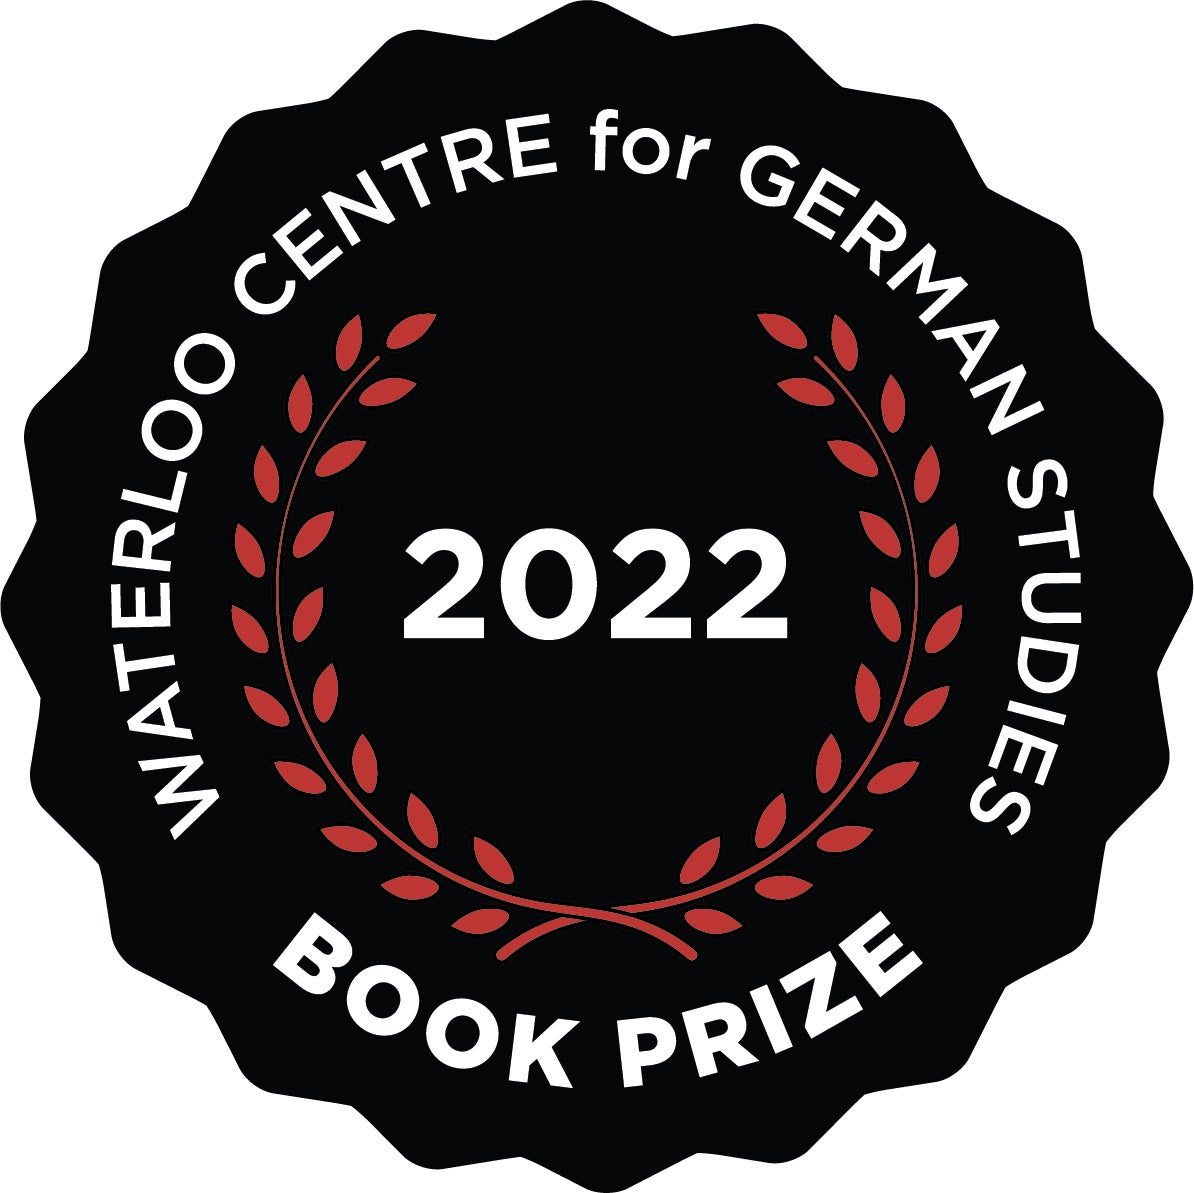 2022 Book Prize logo